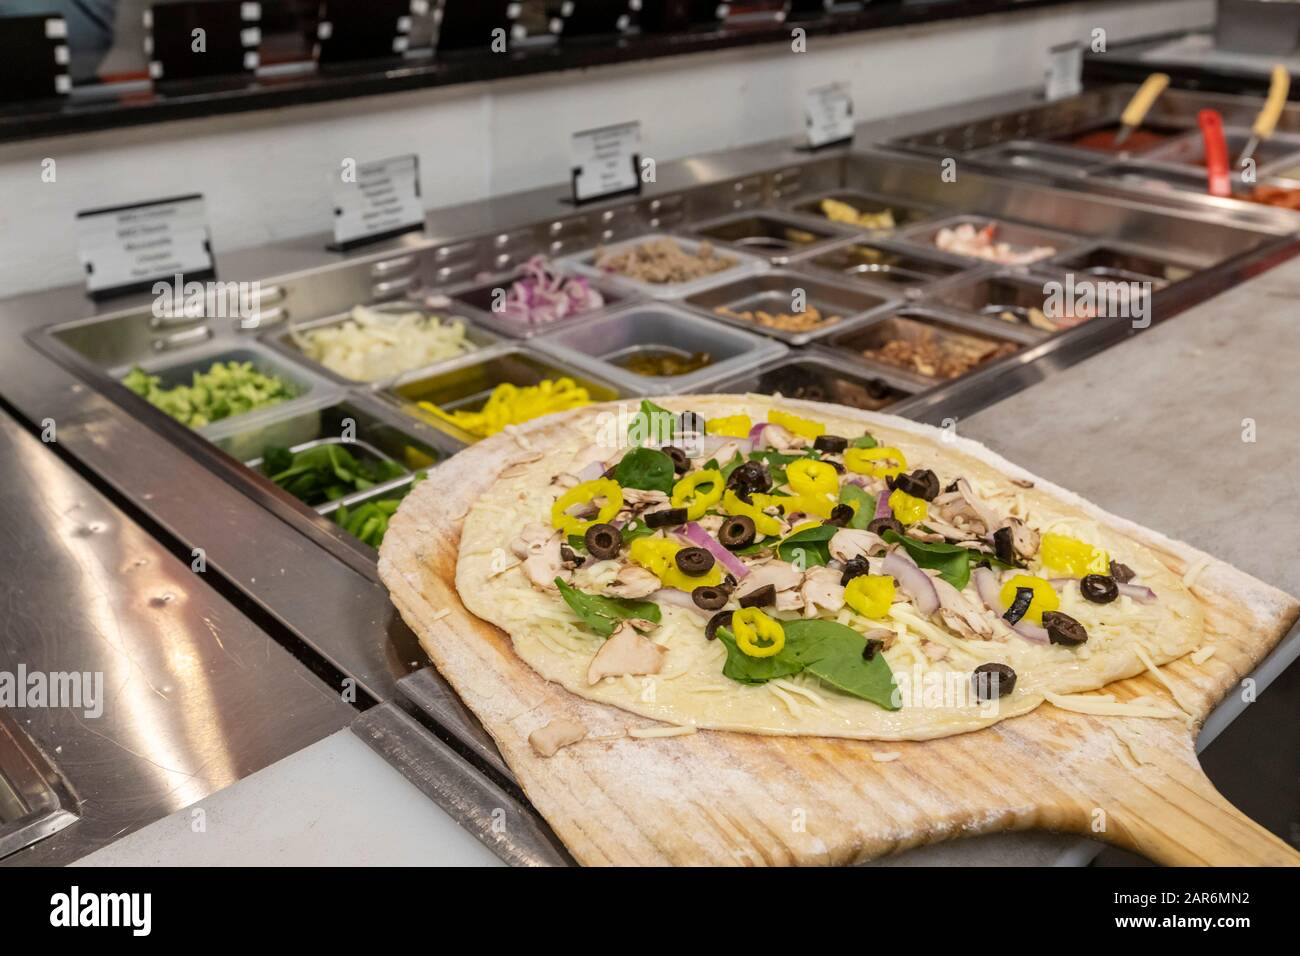 Detroit, Michigan - una pizza lista para hornear en la Pizzeria Flamz en el barrio de Morningside. El restaurante ofrece pizzas hechas a la orden Foto de stock